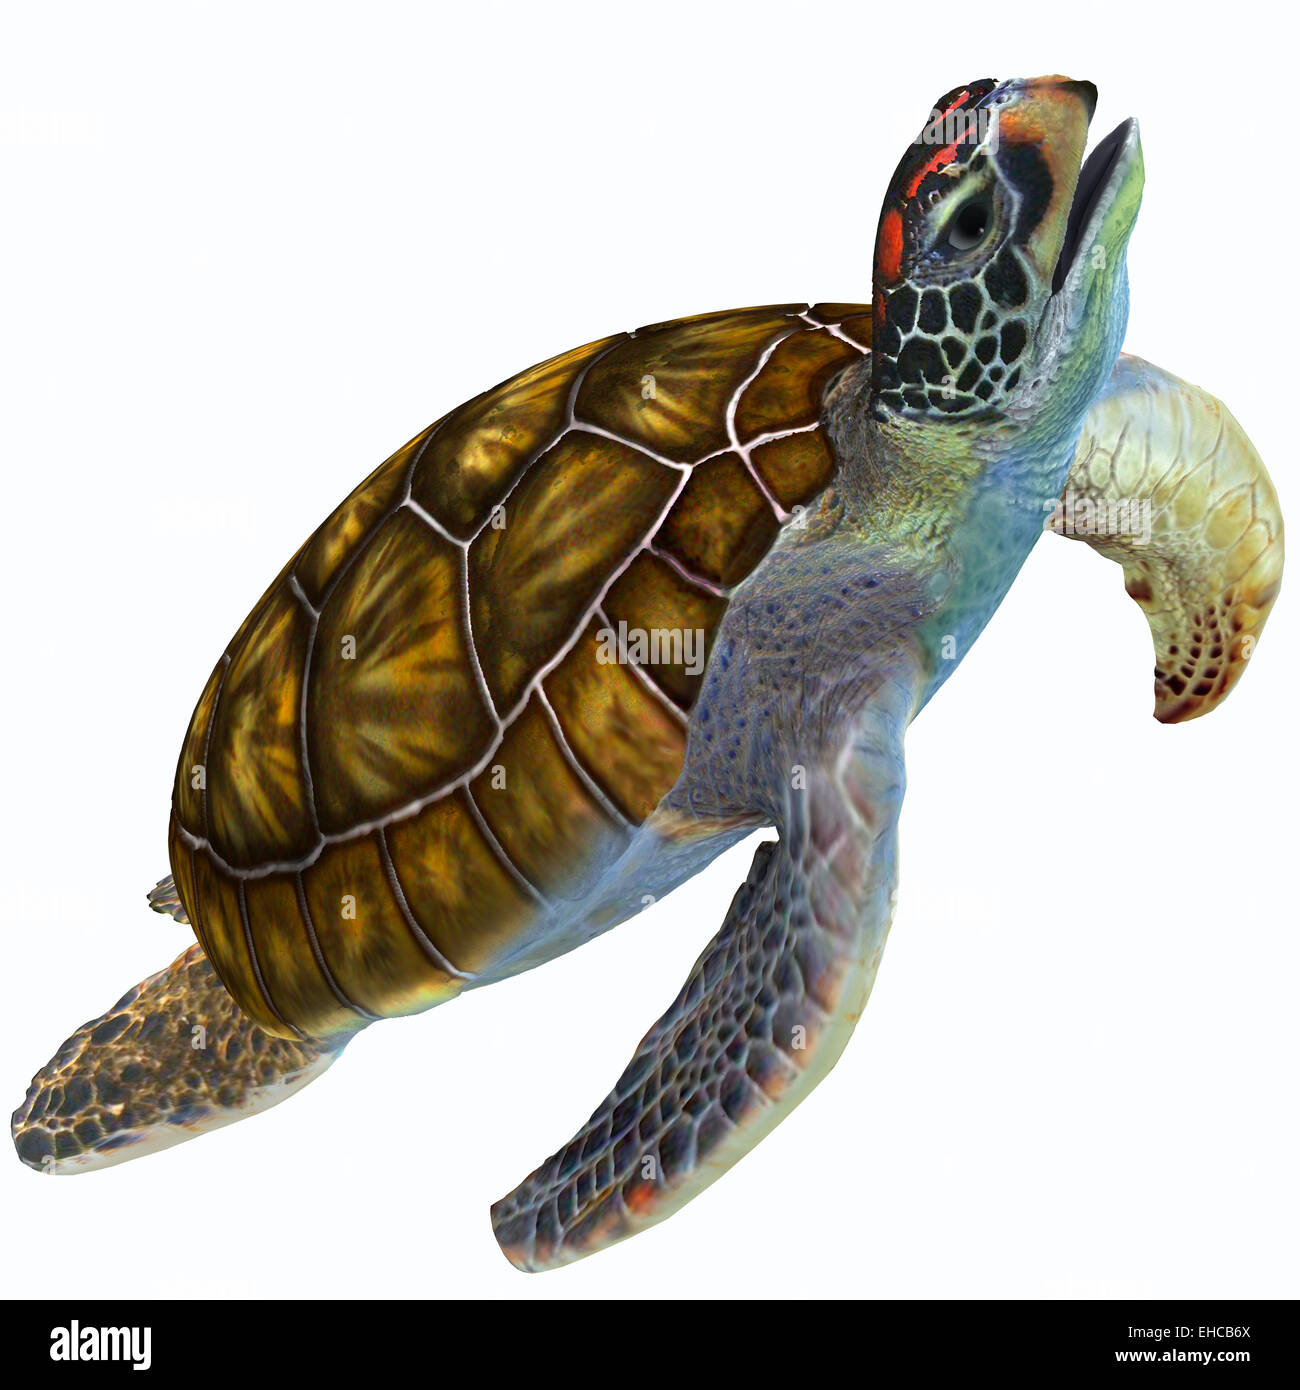 La tortue de mer verte est herbivore qui vit dans des régions subtropicales et tropicales de l'océan dans le monde entier. Banque D'Images